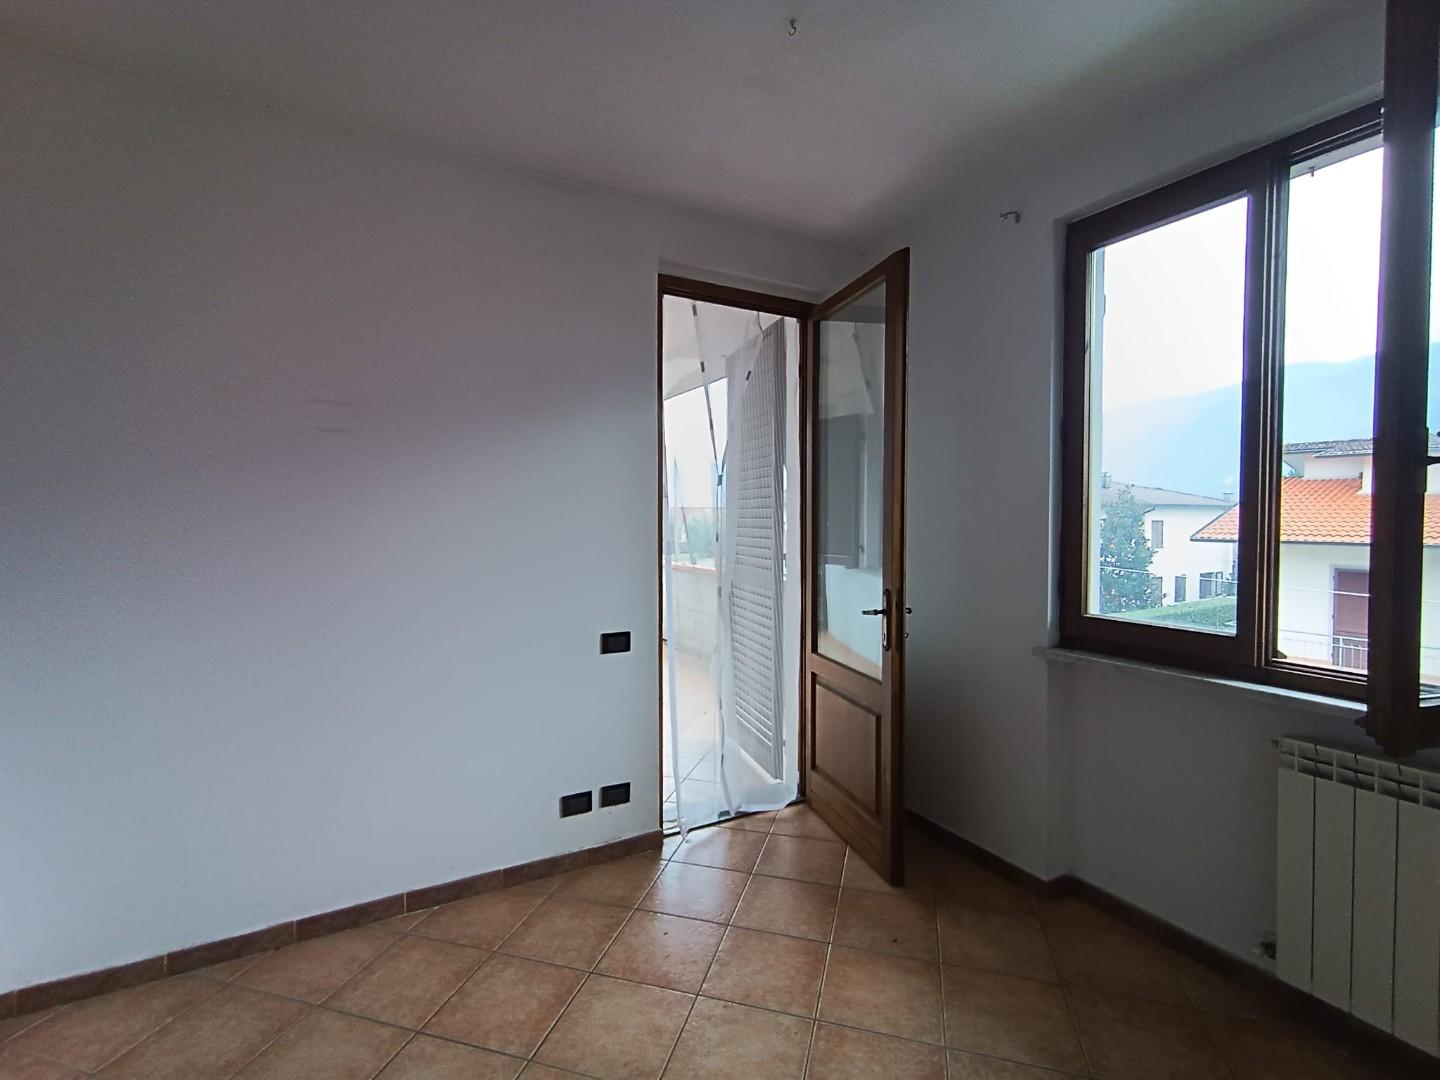 Appartamento in affitto a Coreglia Antelminelli, 3 locali, prezzo € 450 | CambioCasa.it